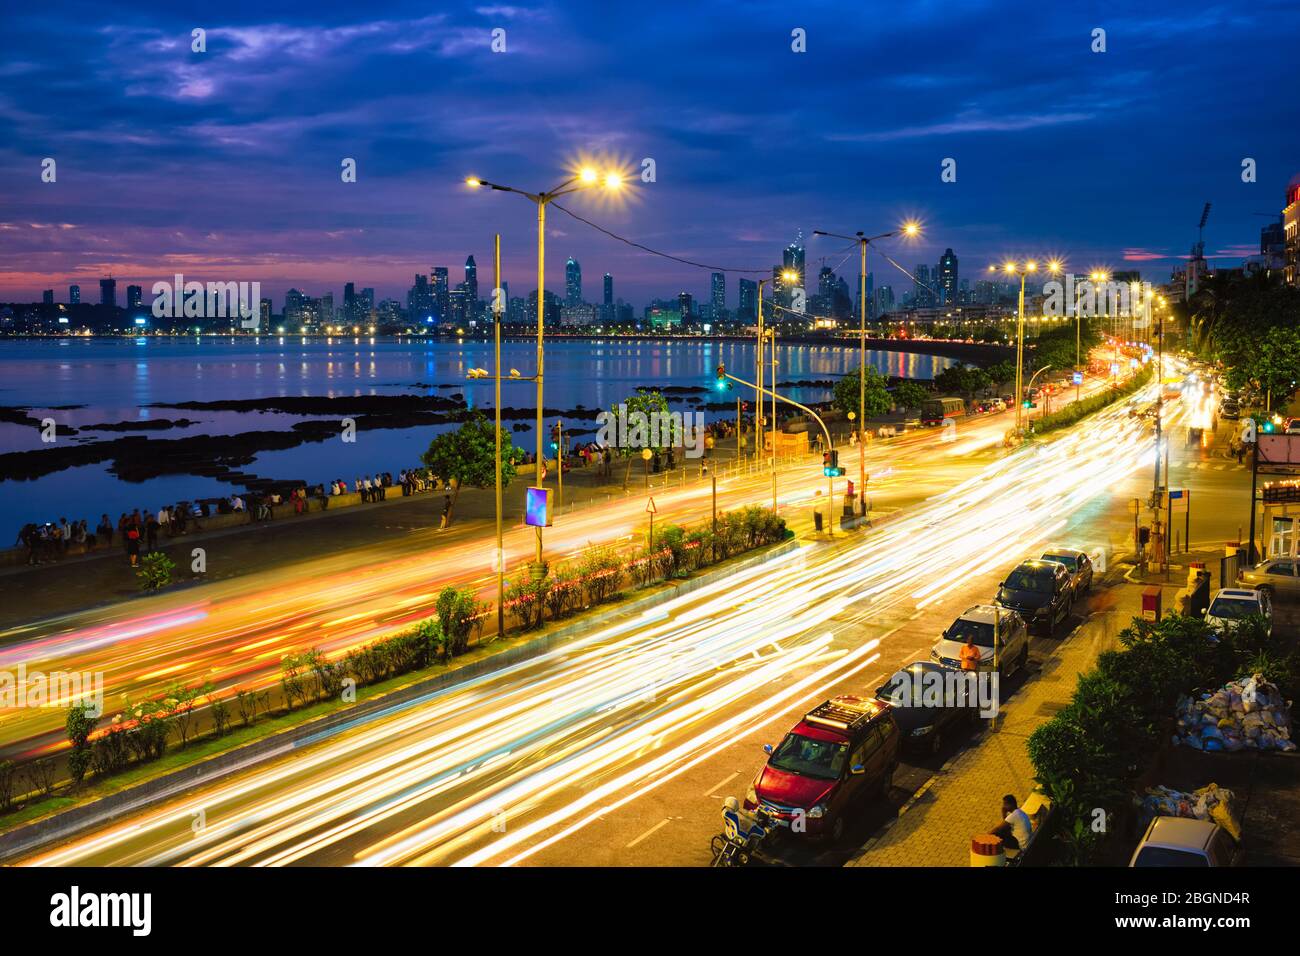 Marine drive in the night with car light trails. Mumbai, Maharashtra, India Stock Photo